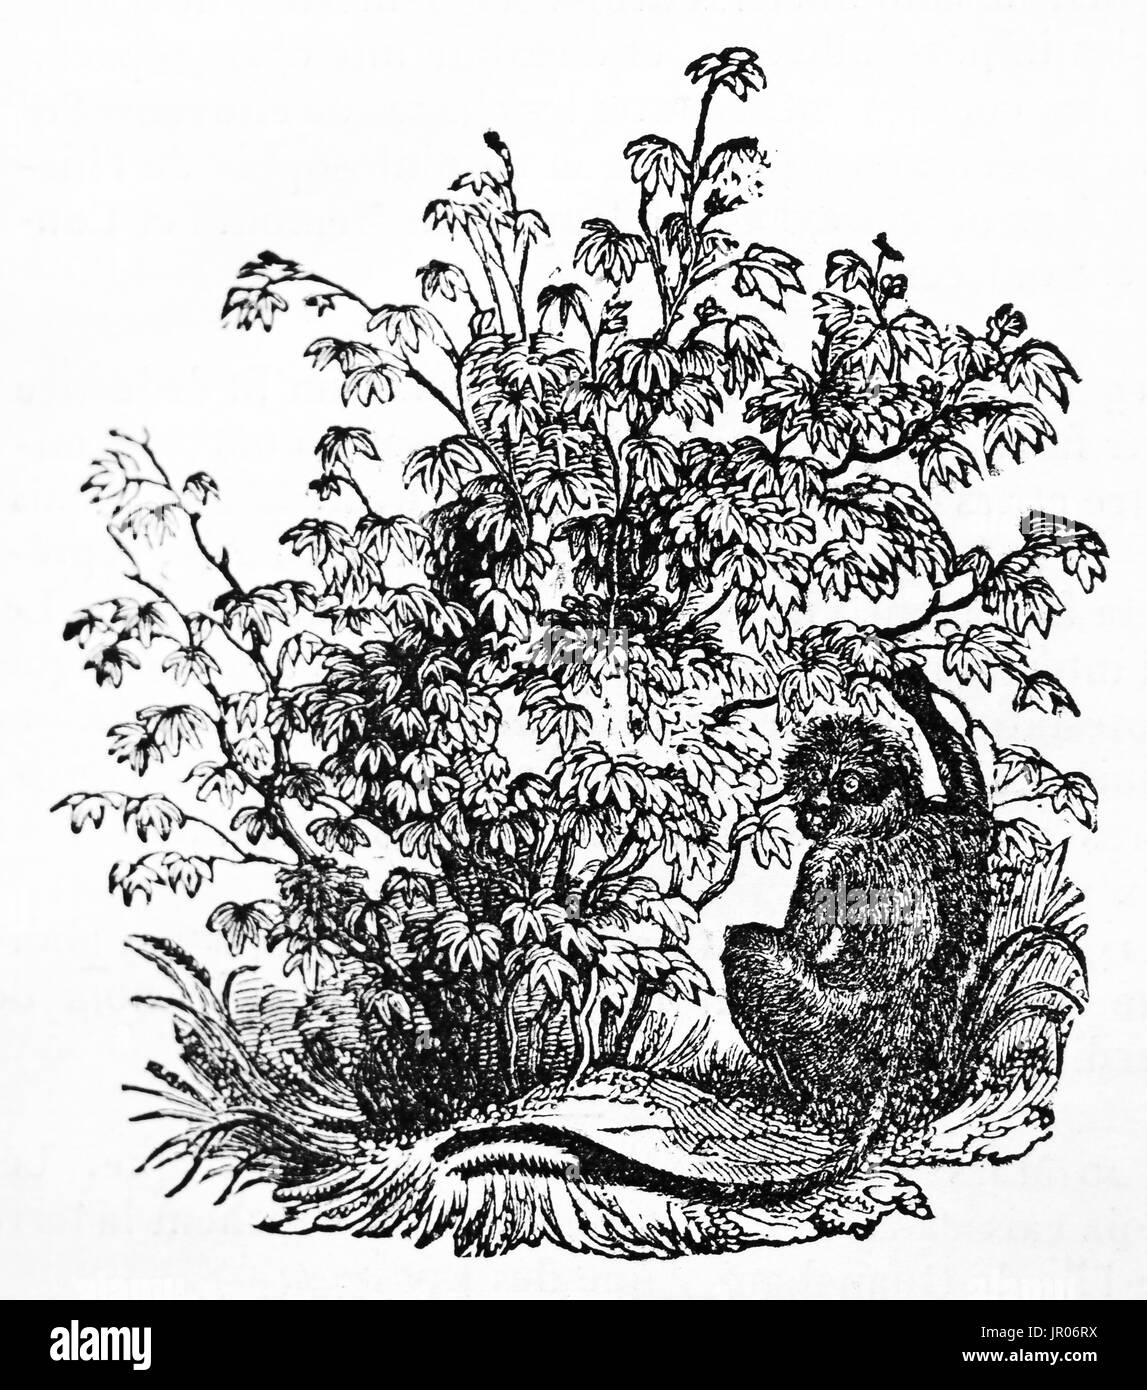 Alte Darstellung des Busches Baumwolle (Gossypium Religiosum). Von unbekannter Autor veröffentlicht am Magasin Pittoresque, 1833. Stockfoto